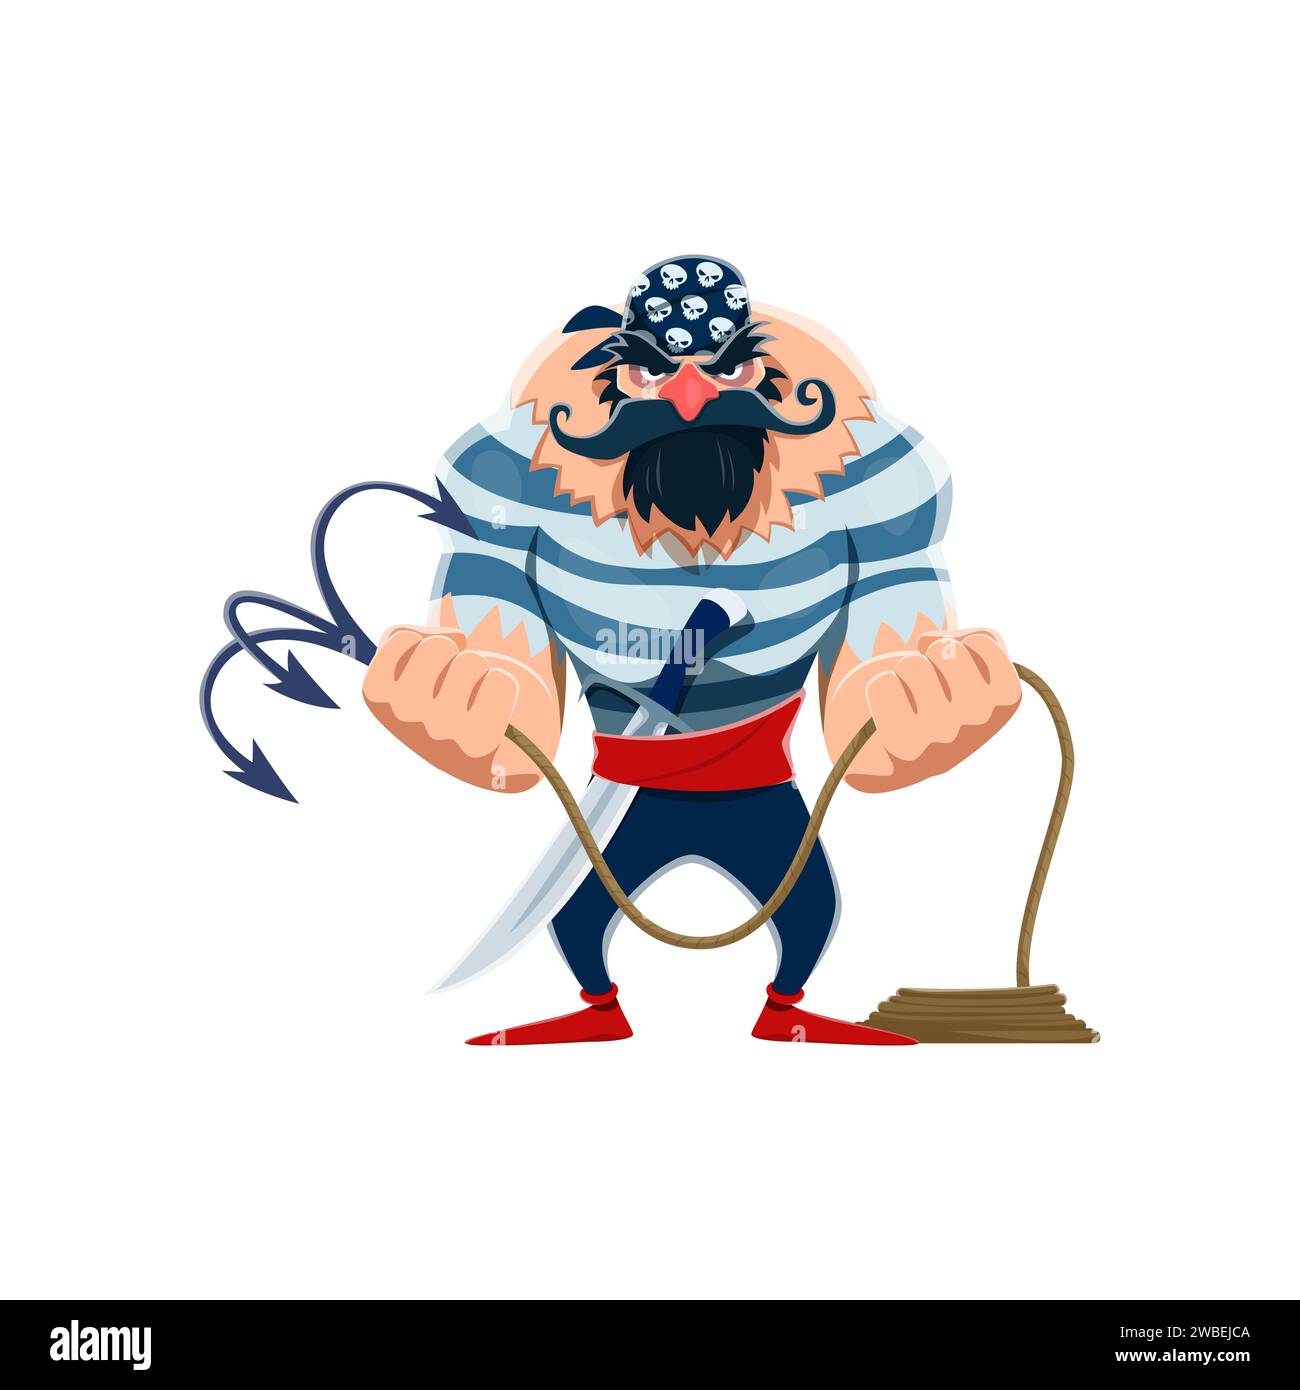 Personaggio pirata dei cartoni animati con un minaccioso volto barbuto brandisce un rampino, pronto per l'avventura in alto mare. Vettoriale isolato, avventuroso buccaneer in giubbotto e bandana Illustrazione Vettoriale